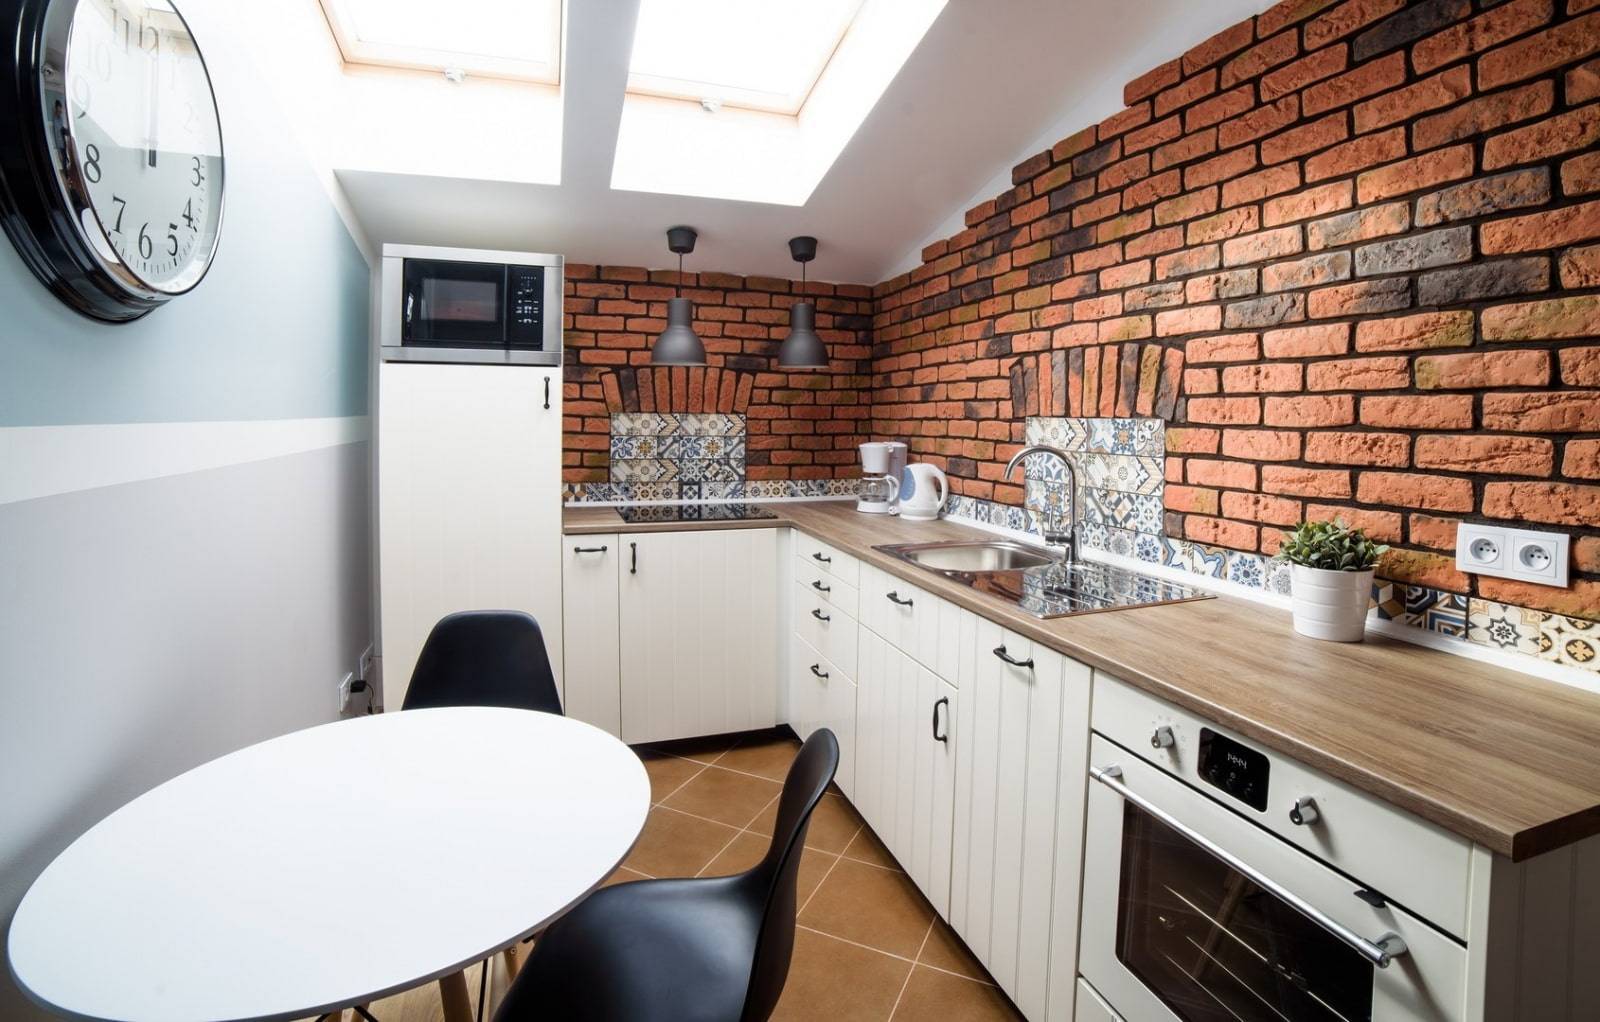 Кирпичная стена в интерьере кухни – дизайн в интерьере кухни с кирпичной стеной, отделка стен под кирпич